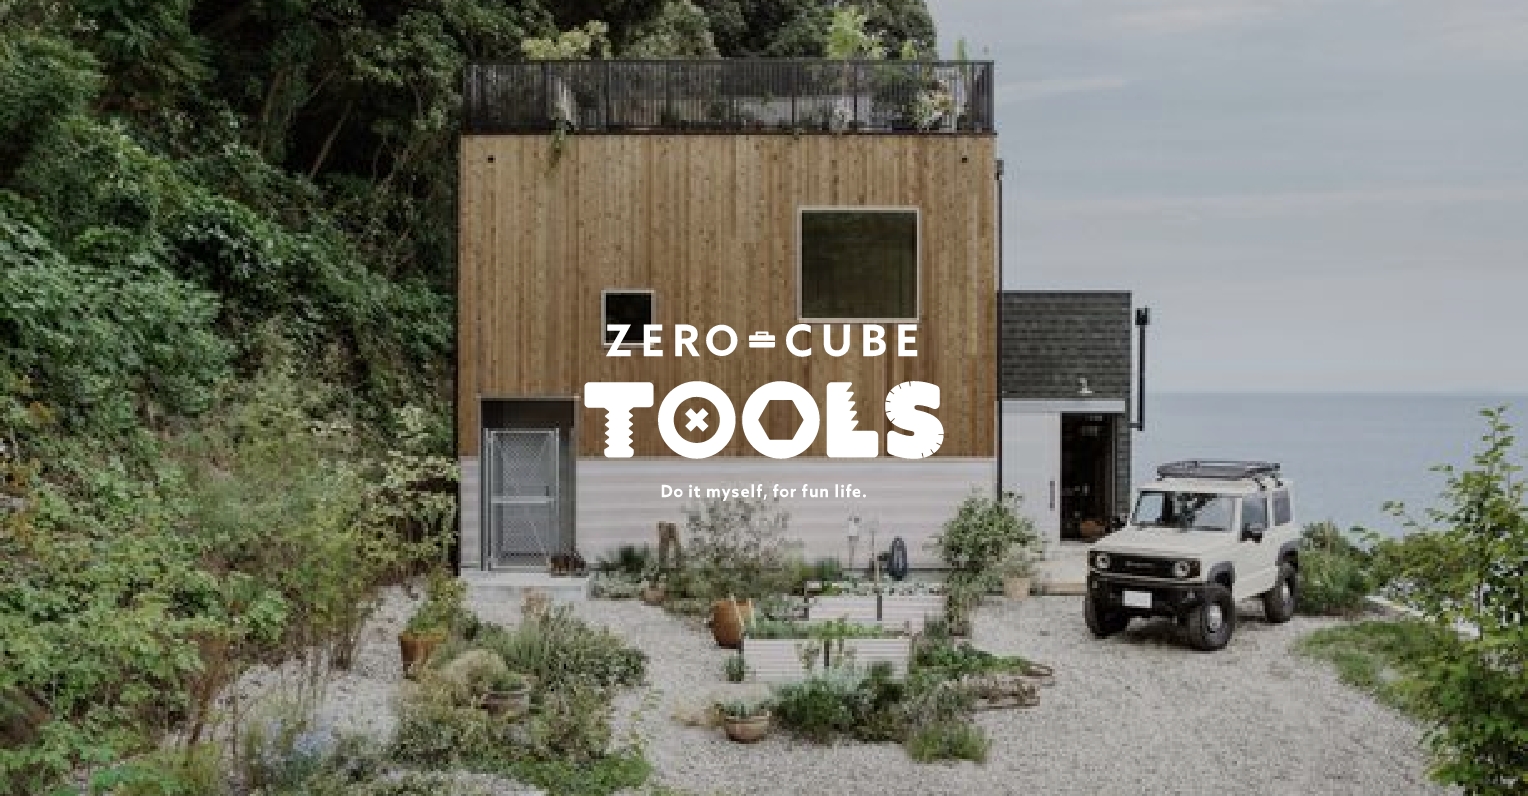 ZERO=CUBE TOOLS タイアップ企画住宅 ”新築らしくない”新しい形の住宅